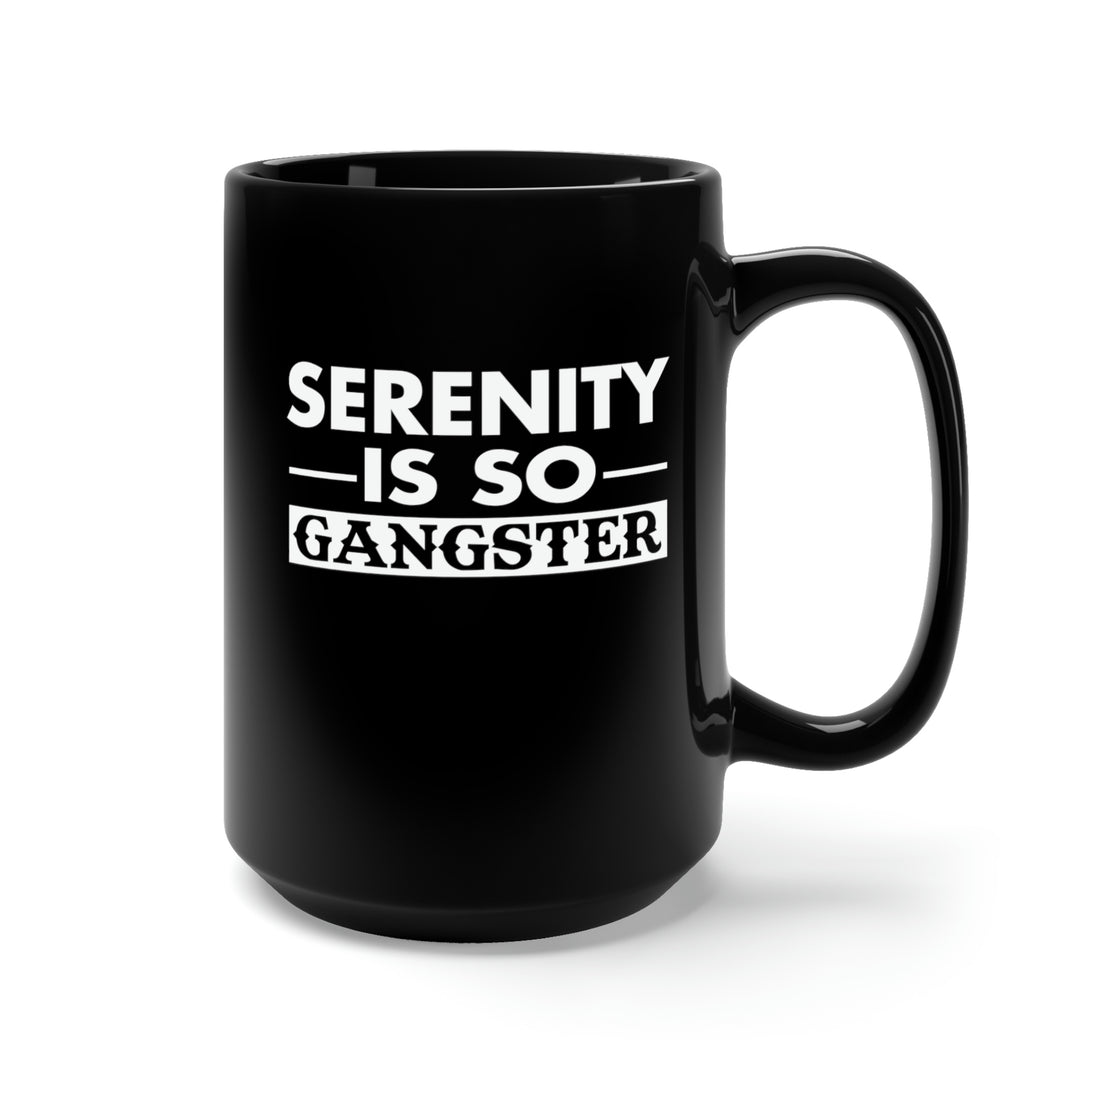 Serenity Is So Gangster - Large 15oz Black Mug